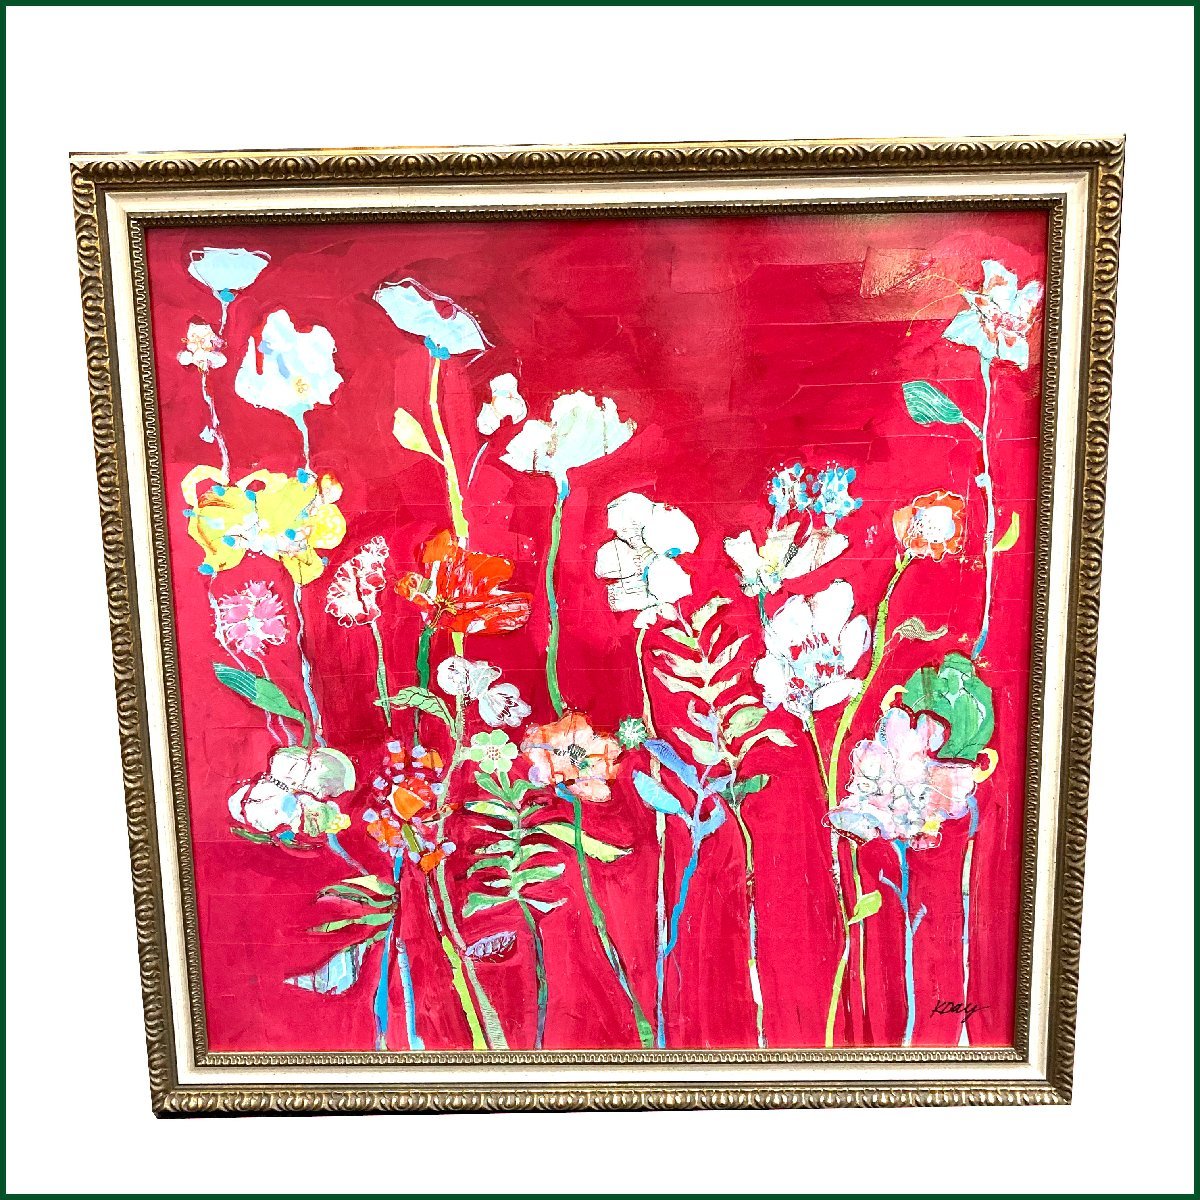 绘画●Kelly Day● 丰富花朵壁挂式丙烯酸乳液树脂画带框 68×68 标价 22, 000 日元, 艺术品, 绘画, 粉彩画, 蜡笔画